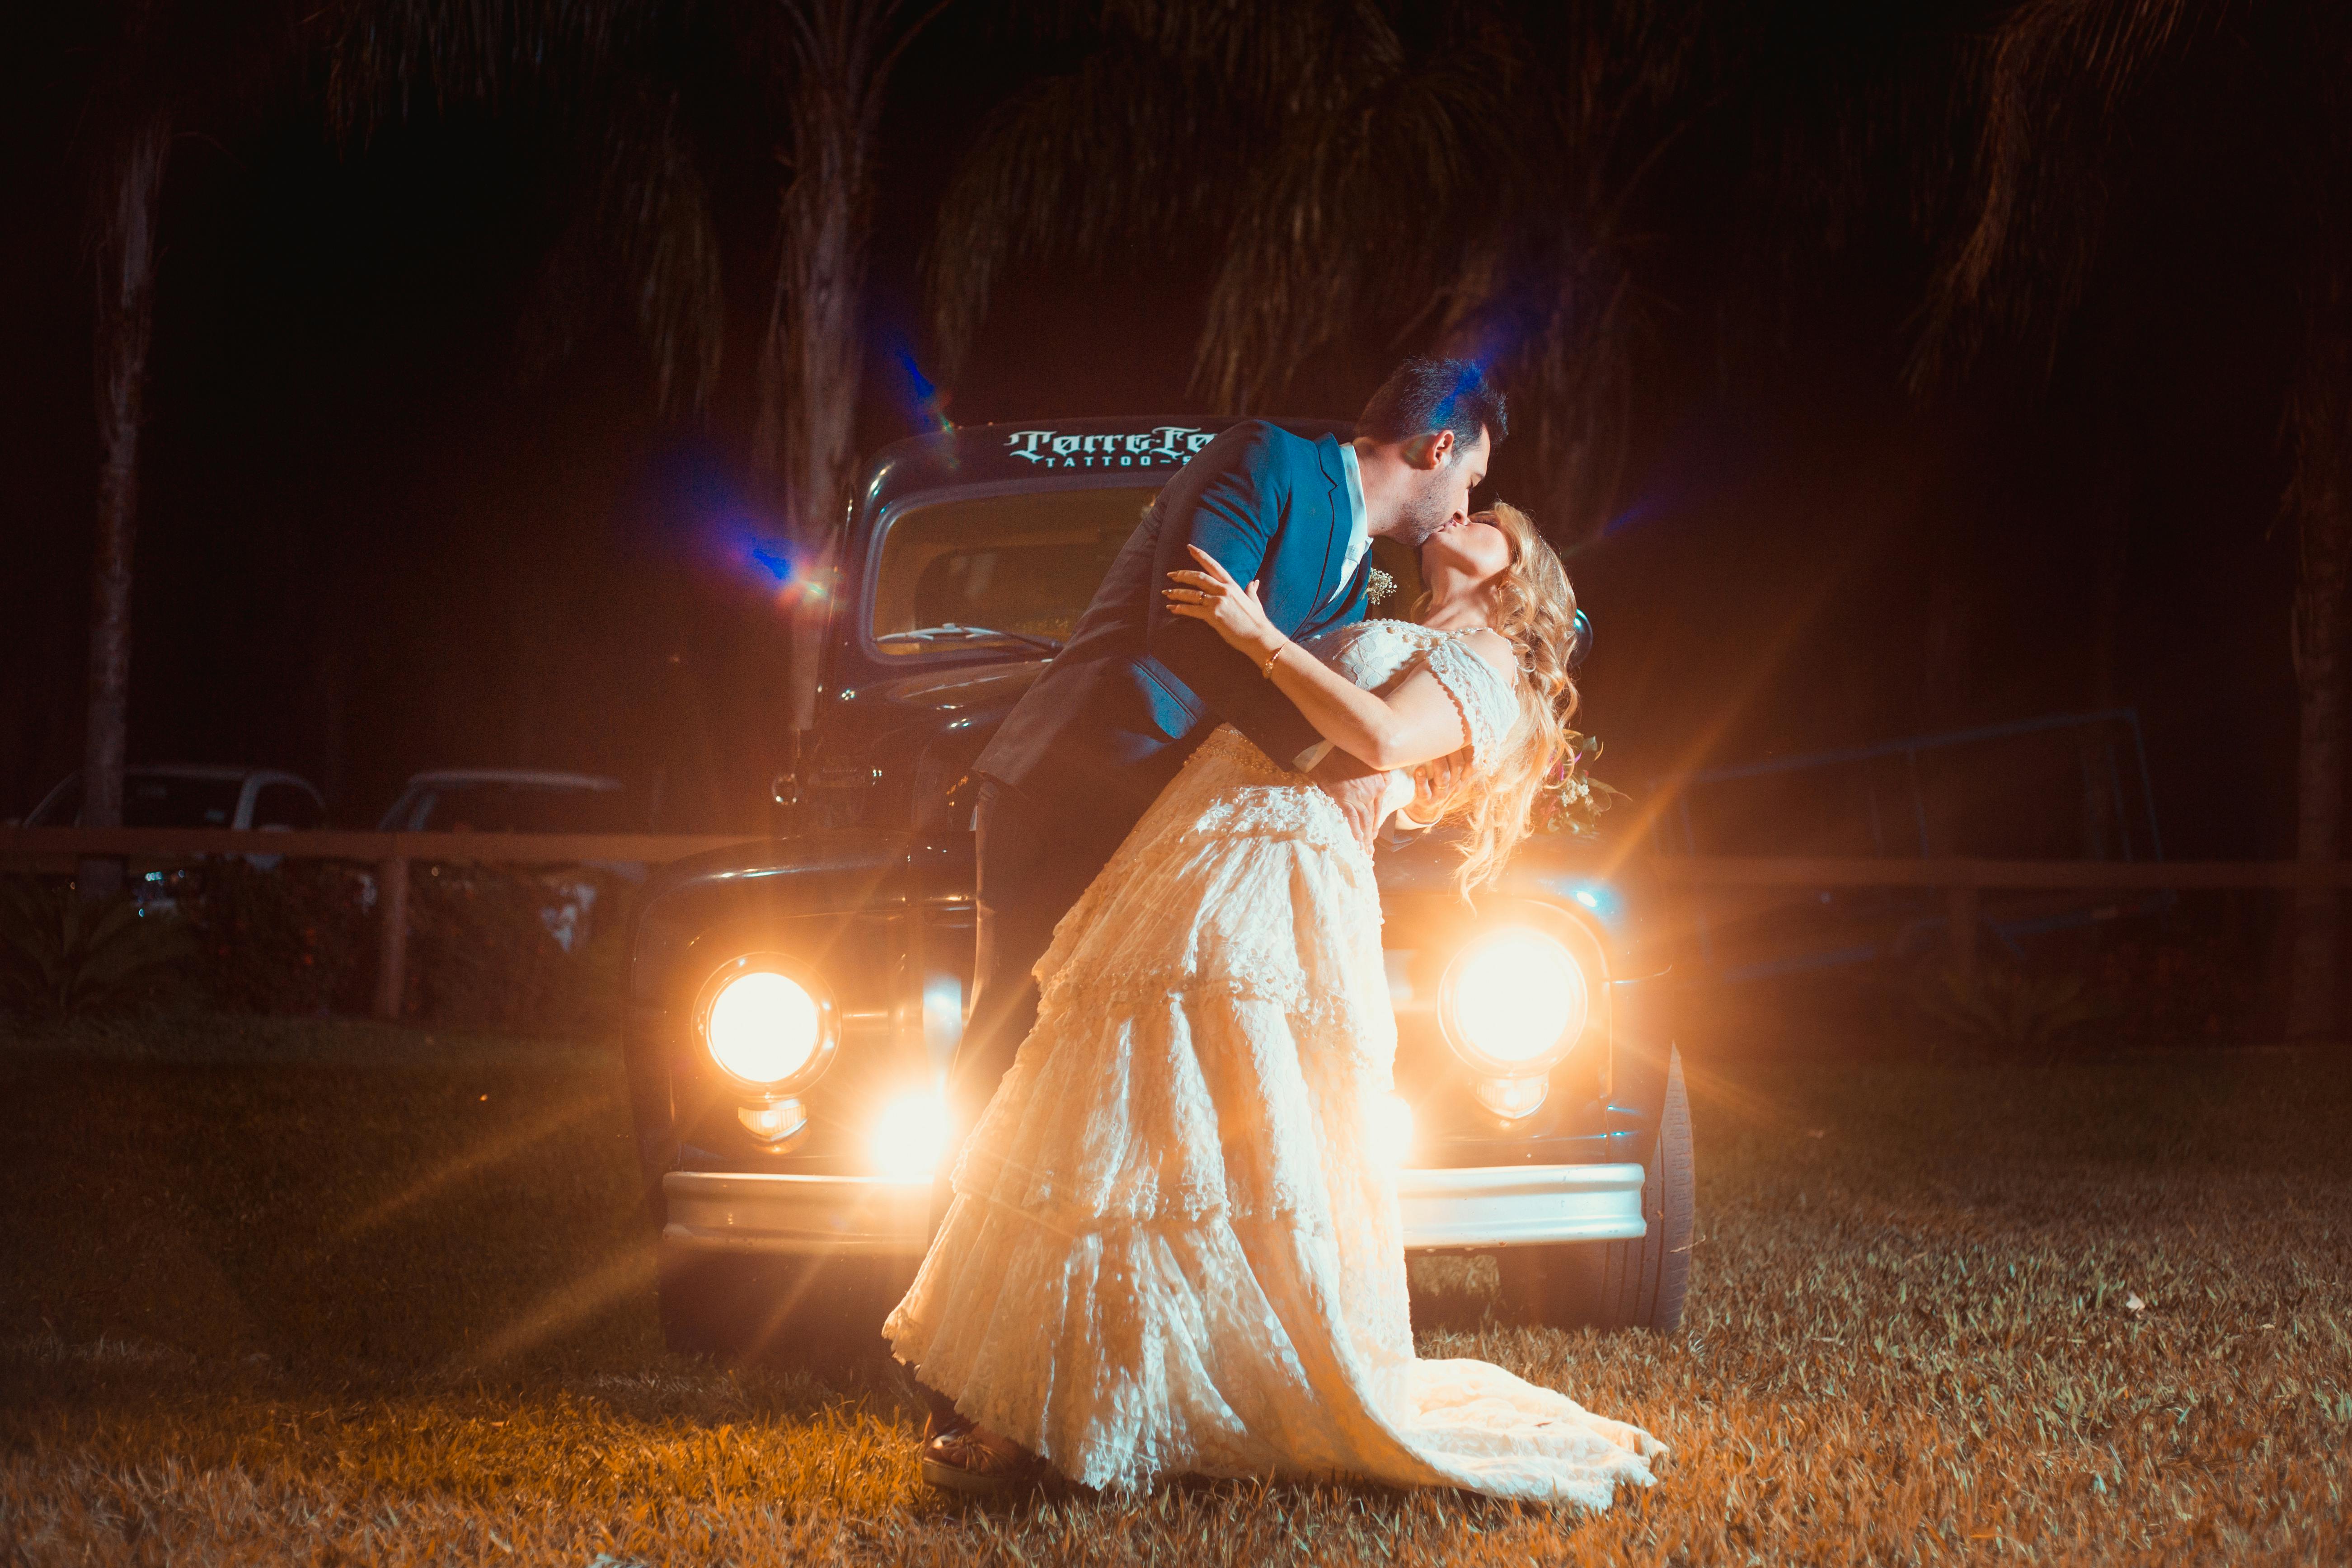 Un hombre y una mujer besándose apasionadamente delante de un automóvil | Foto: Pexels